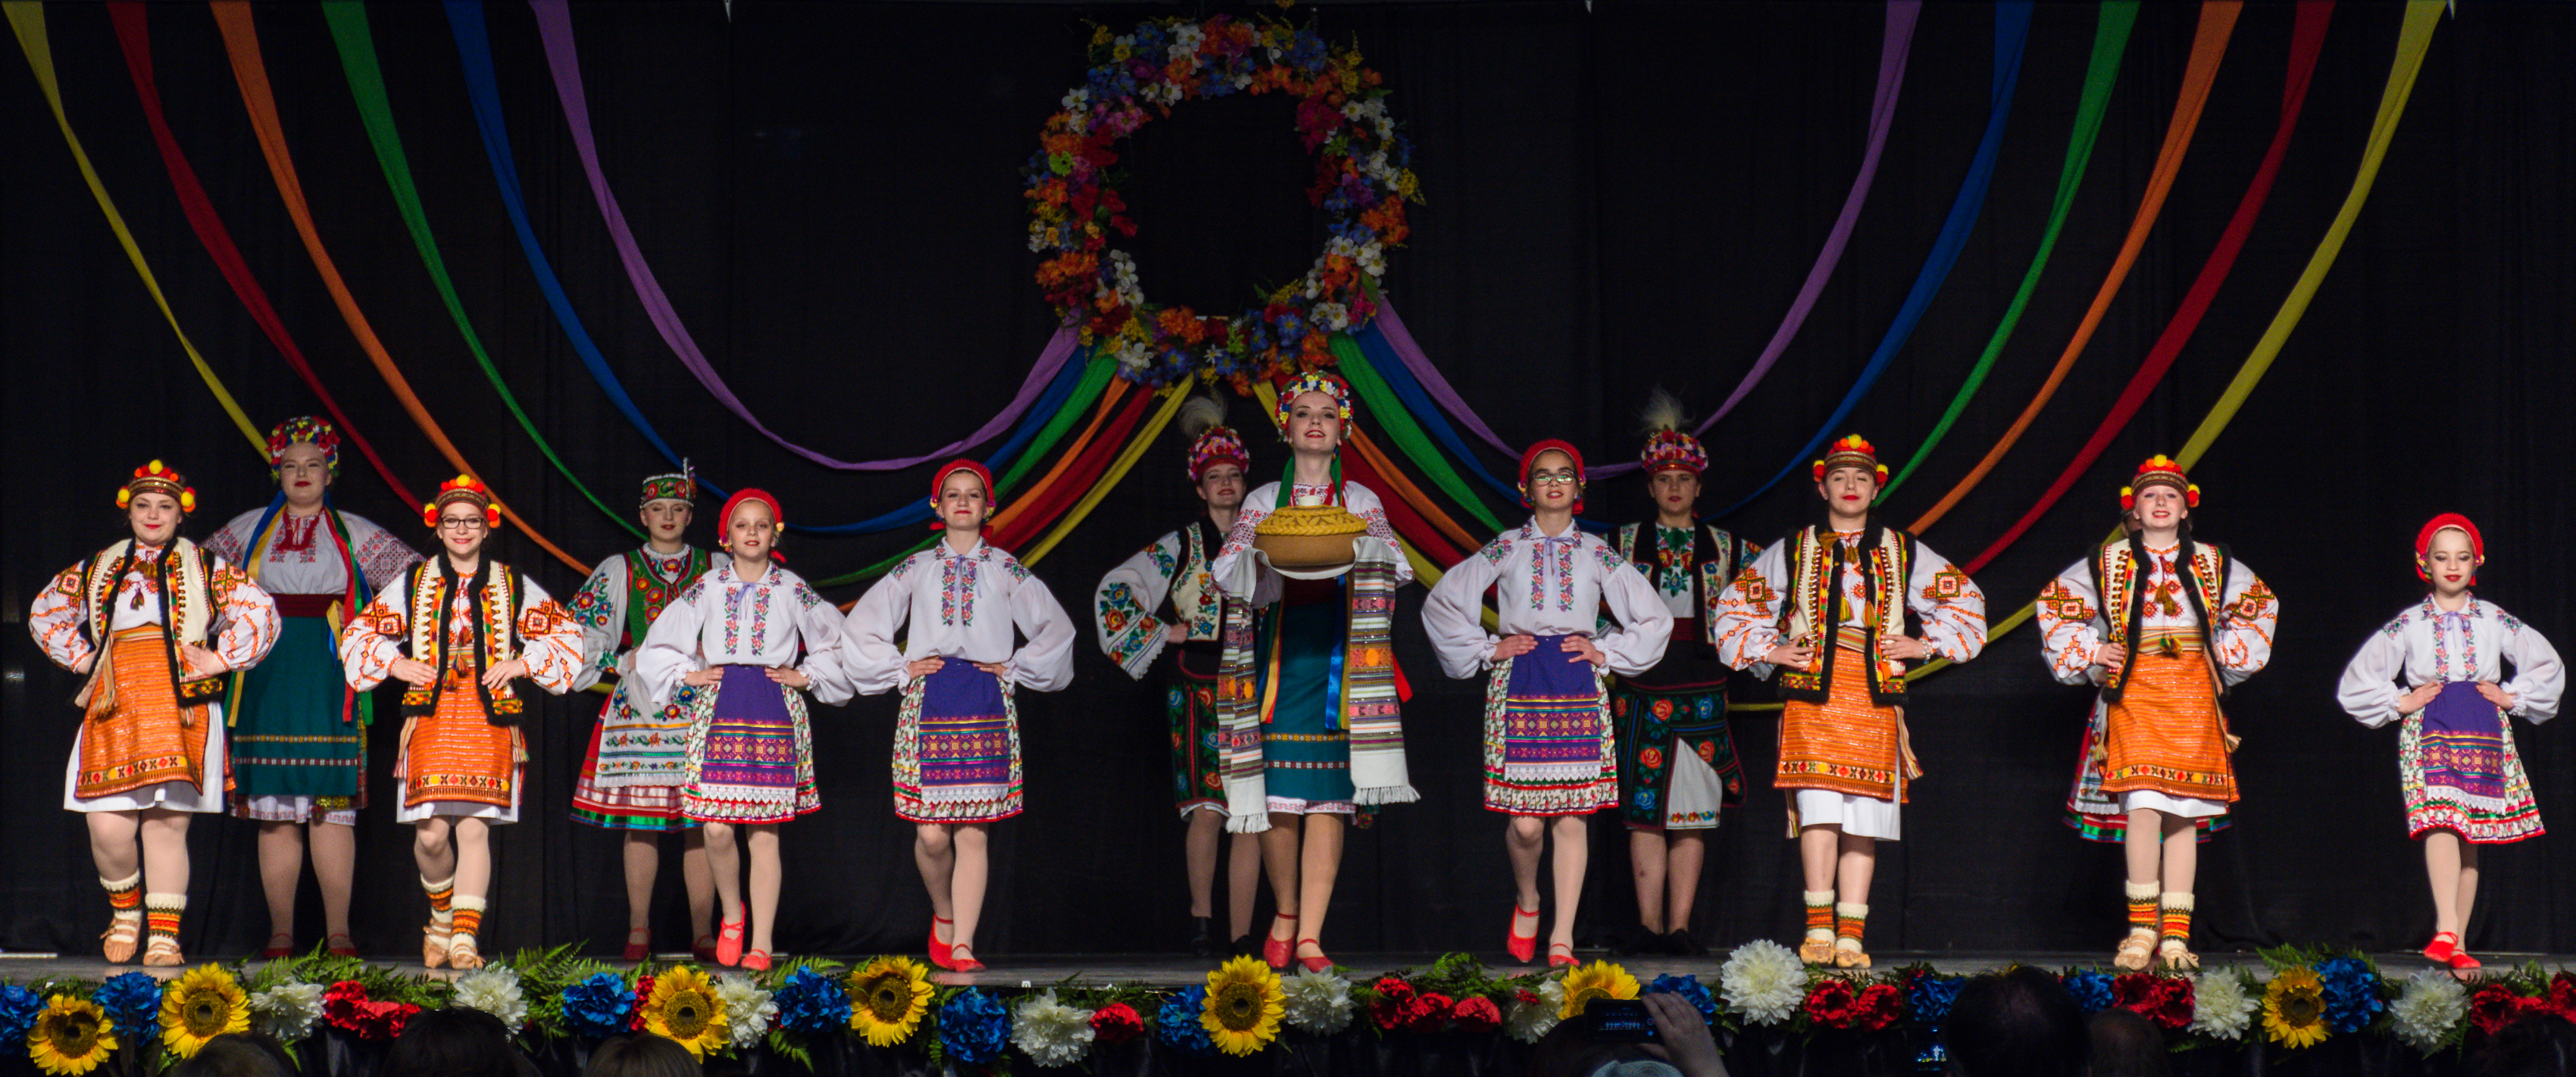 50 Years of Chaban Ukrainian Dance